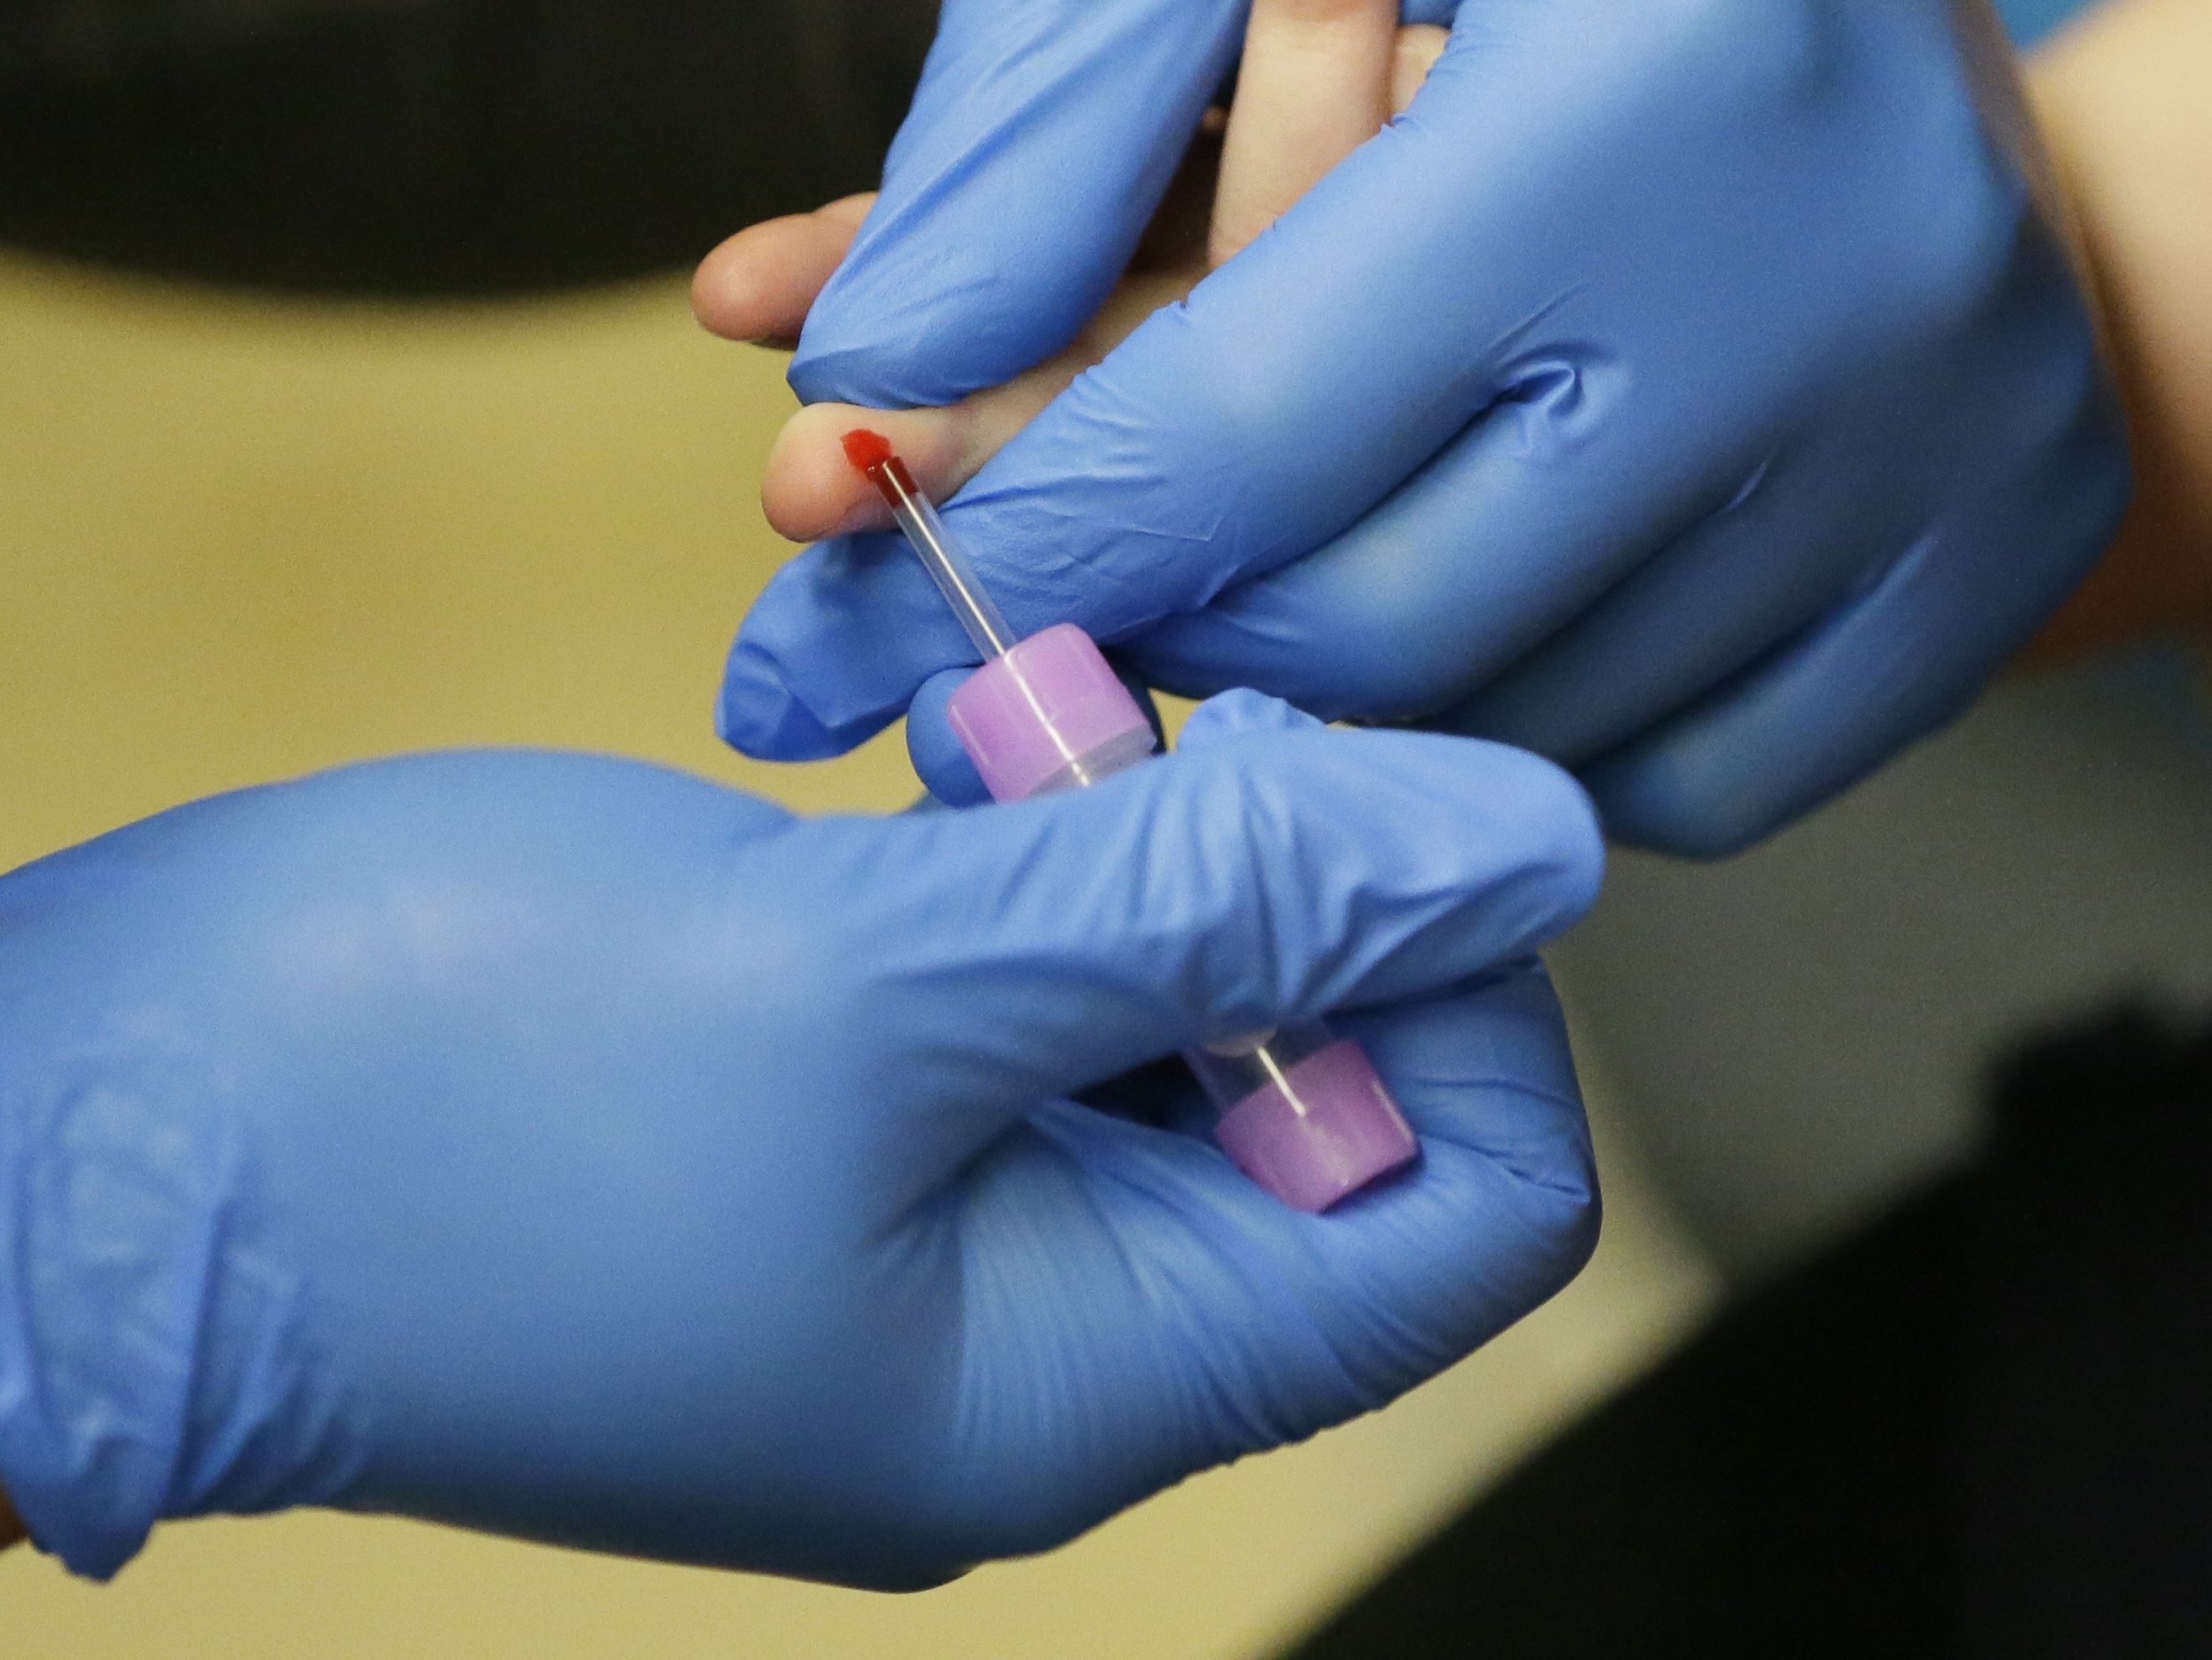 Finger prick blood test for lead